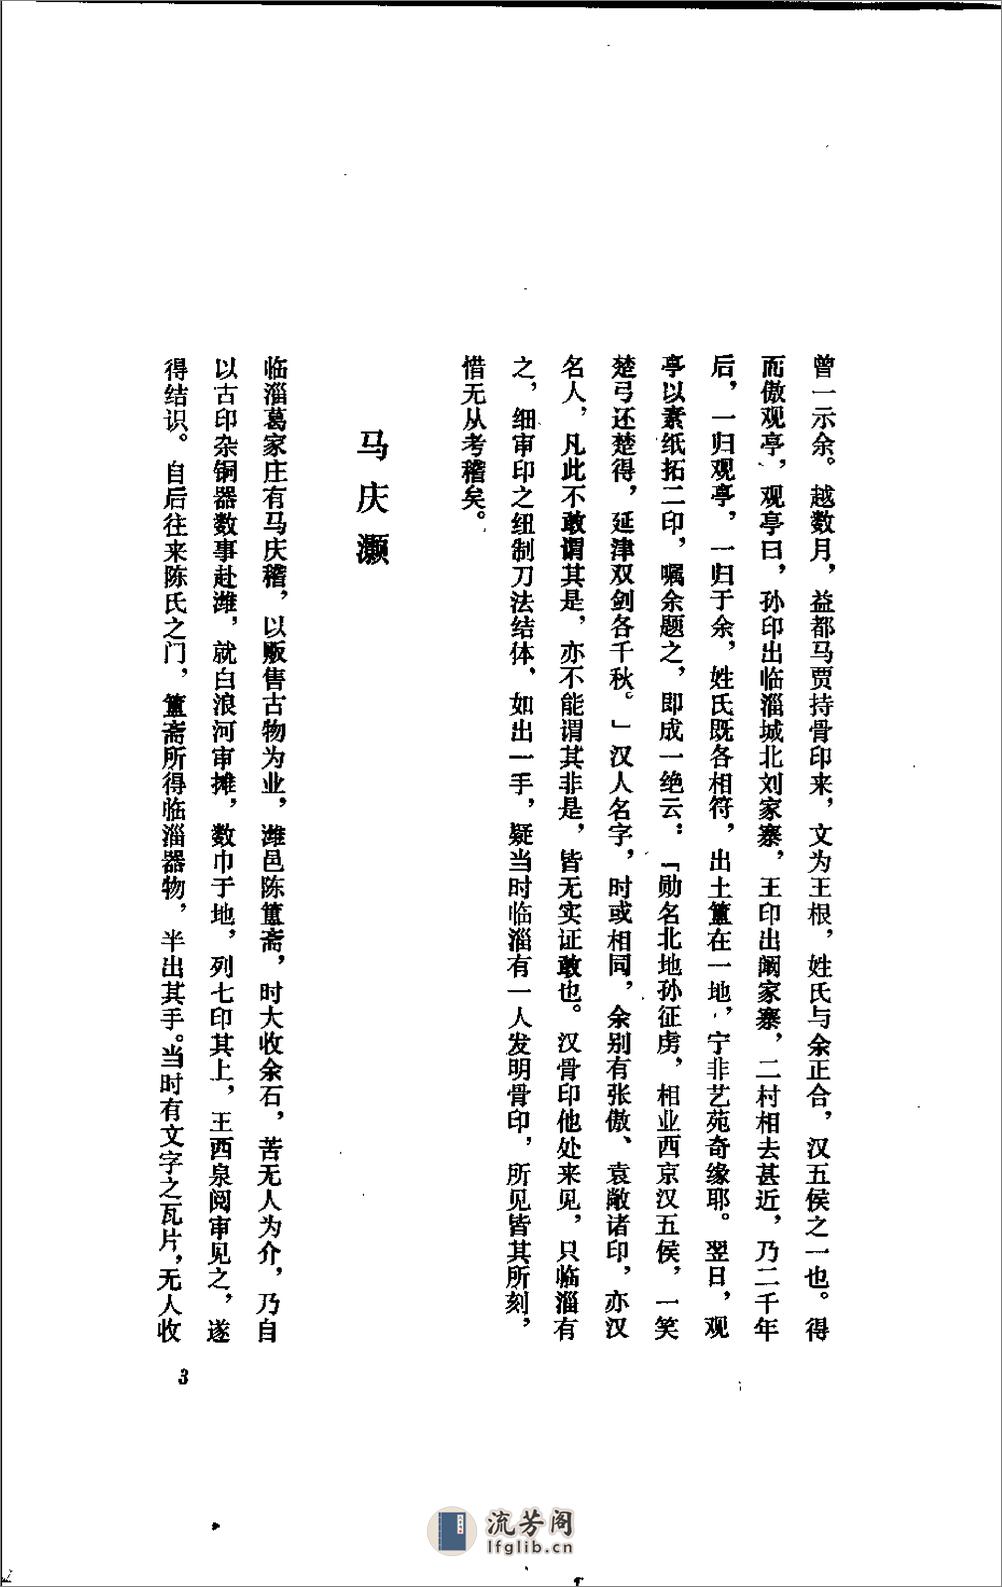 五镫精舍印话 - 王琯-齐鲁书社 - 第18页预览图